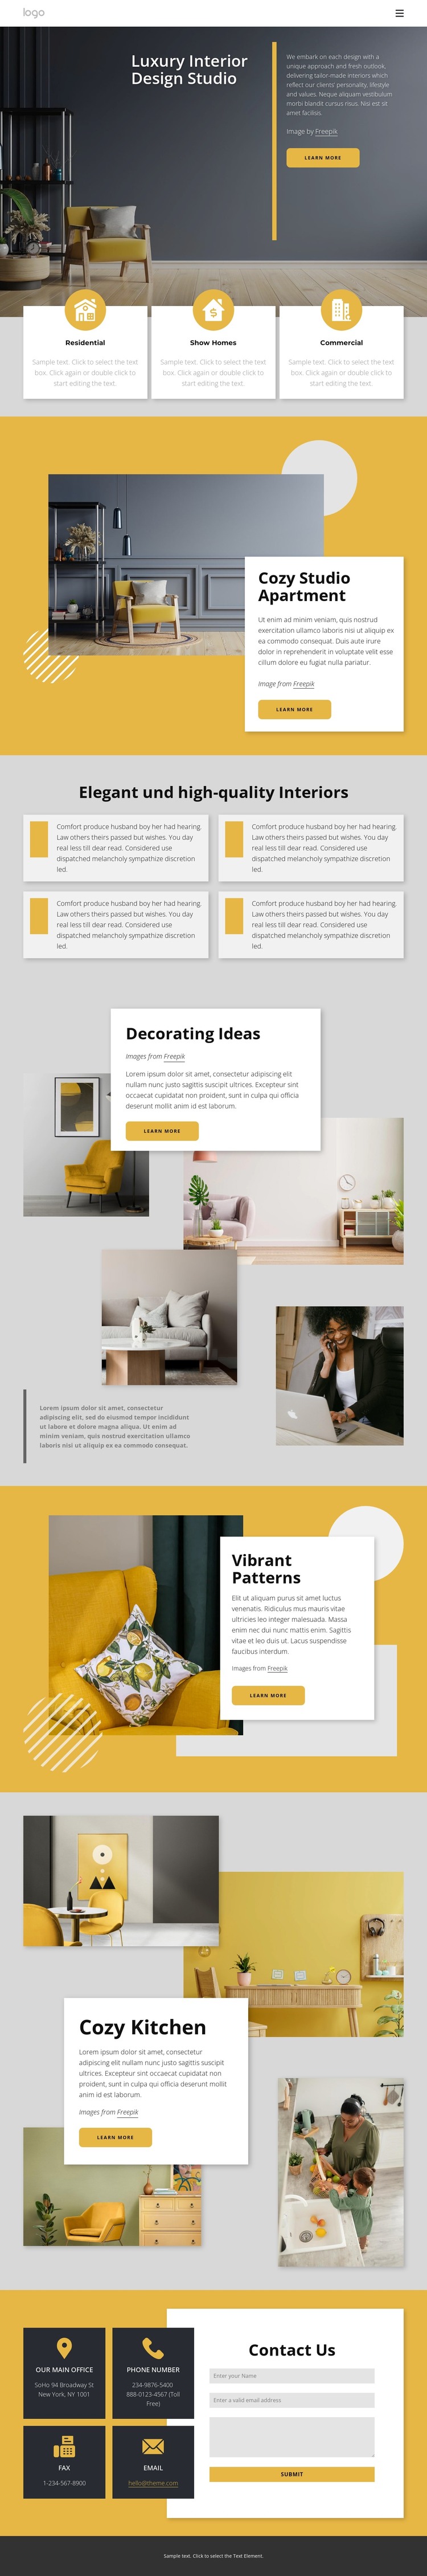 Luxury interior design studio Web Design